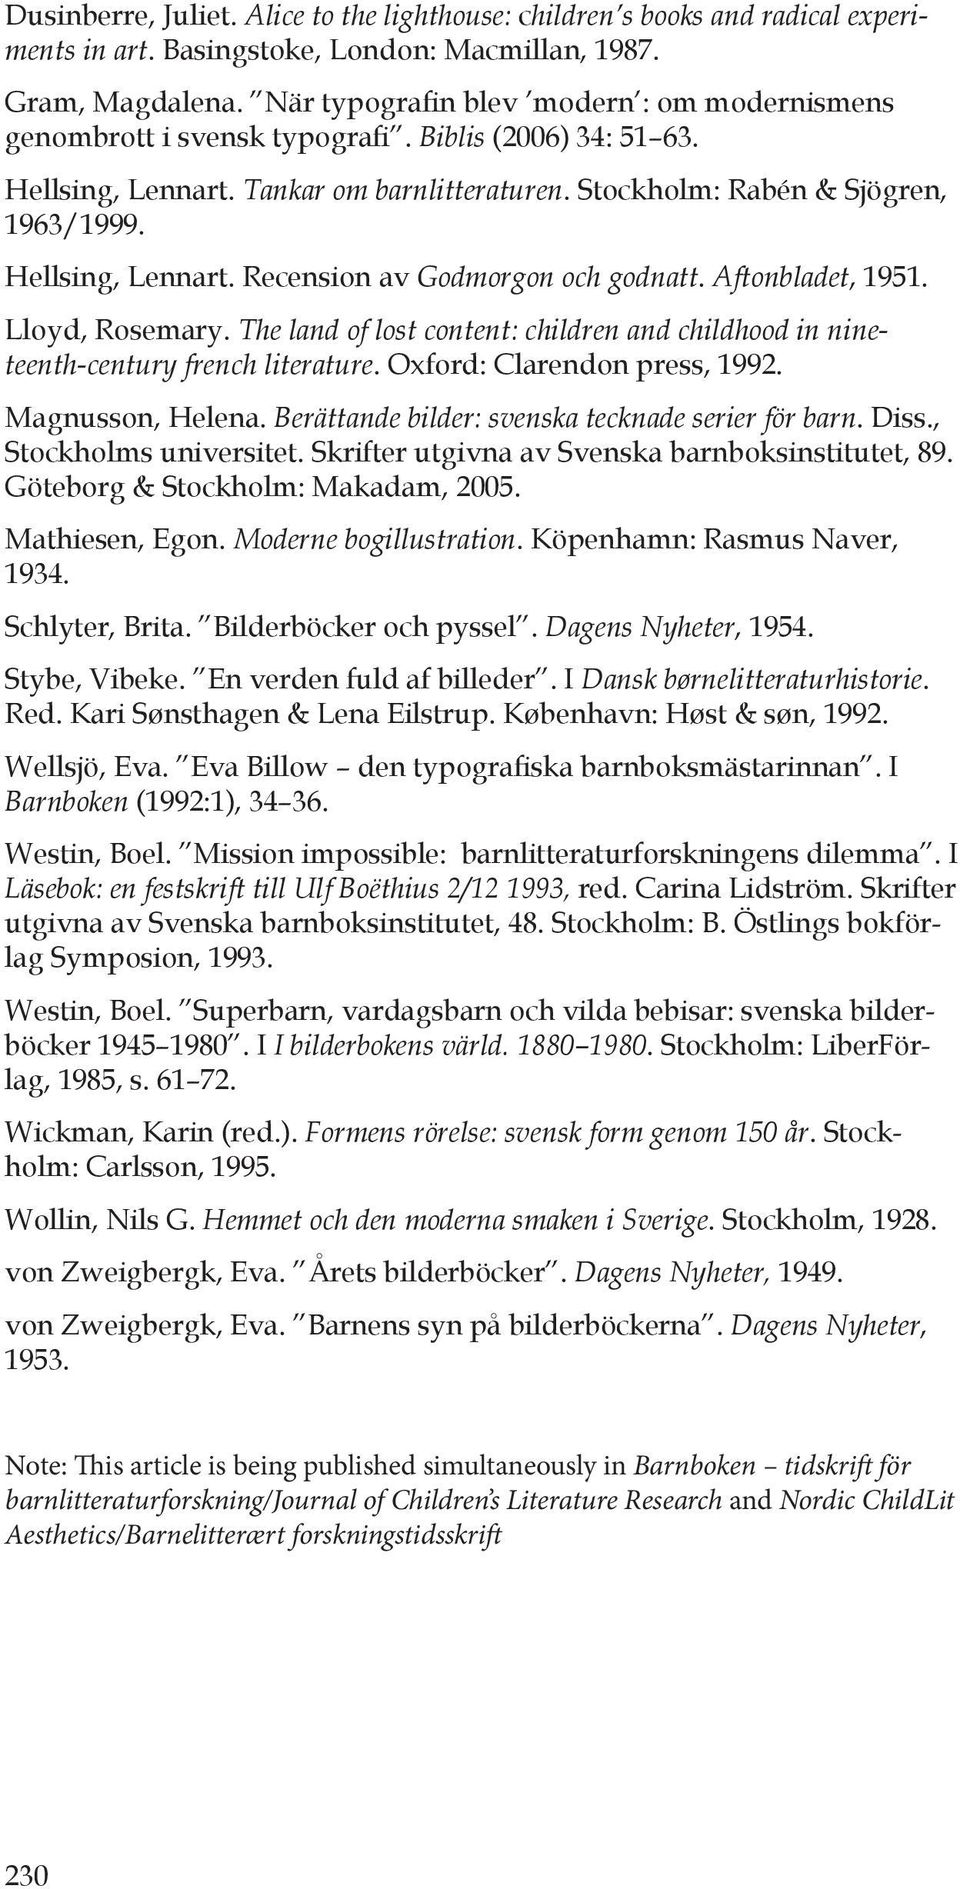 Hellsing, Lennart. Recension av Godmorgon och godnatt. Aftonbladet, 1951. Lloyd, Rosemary. The land of lost content: children and childhood in nineteenth-century french literature.